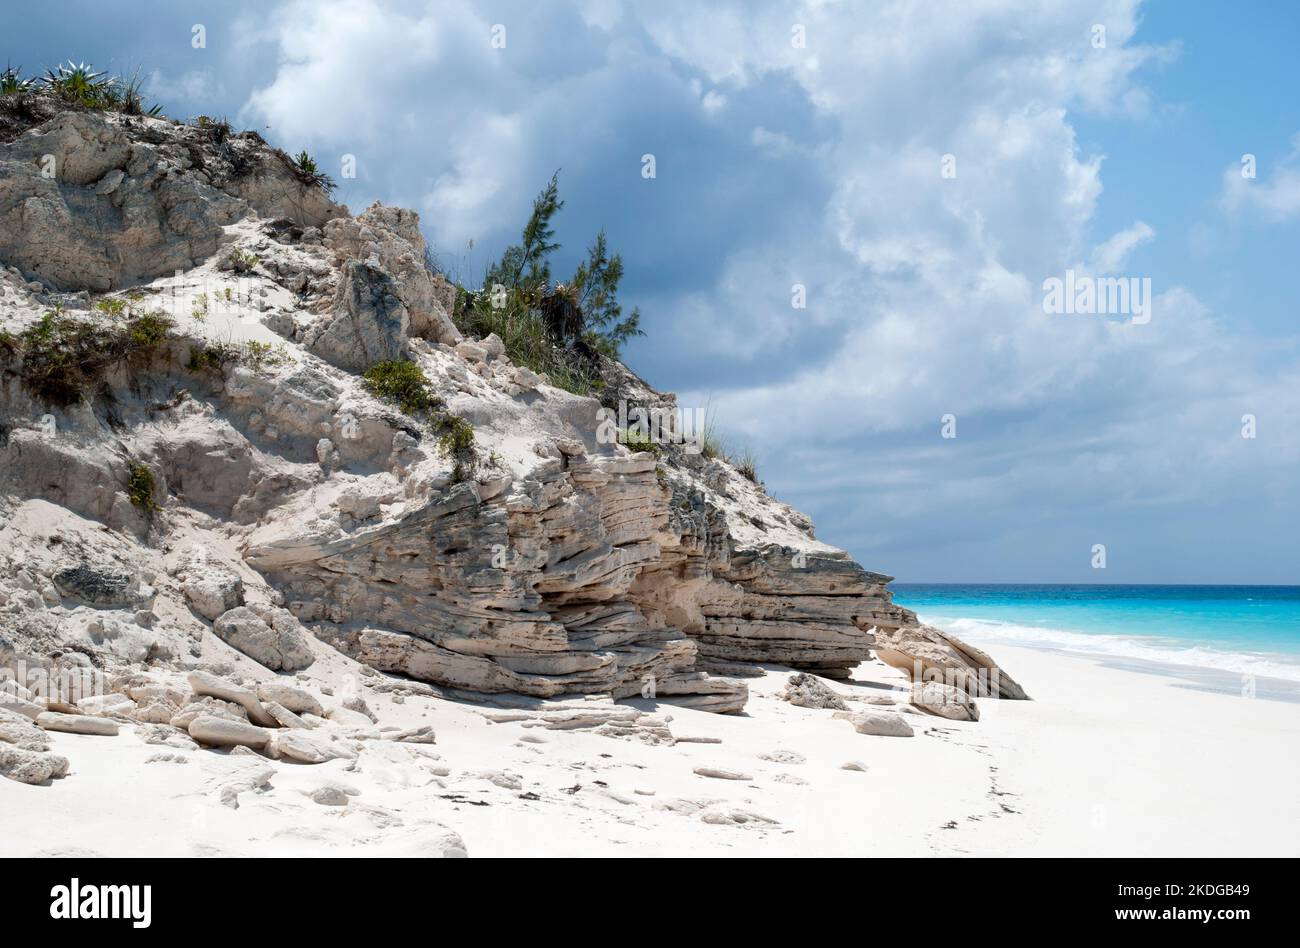 Die erodierte Felsformation und ein farbenfroher Strand auf der unbewohnten Insel Half Moon Cay (Bahamas). Stockfoto